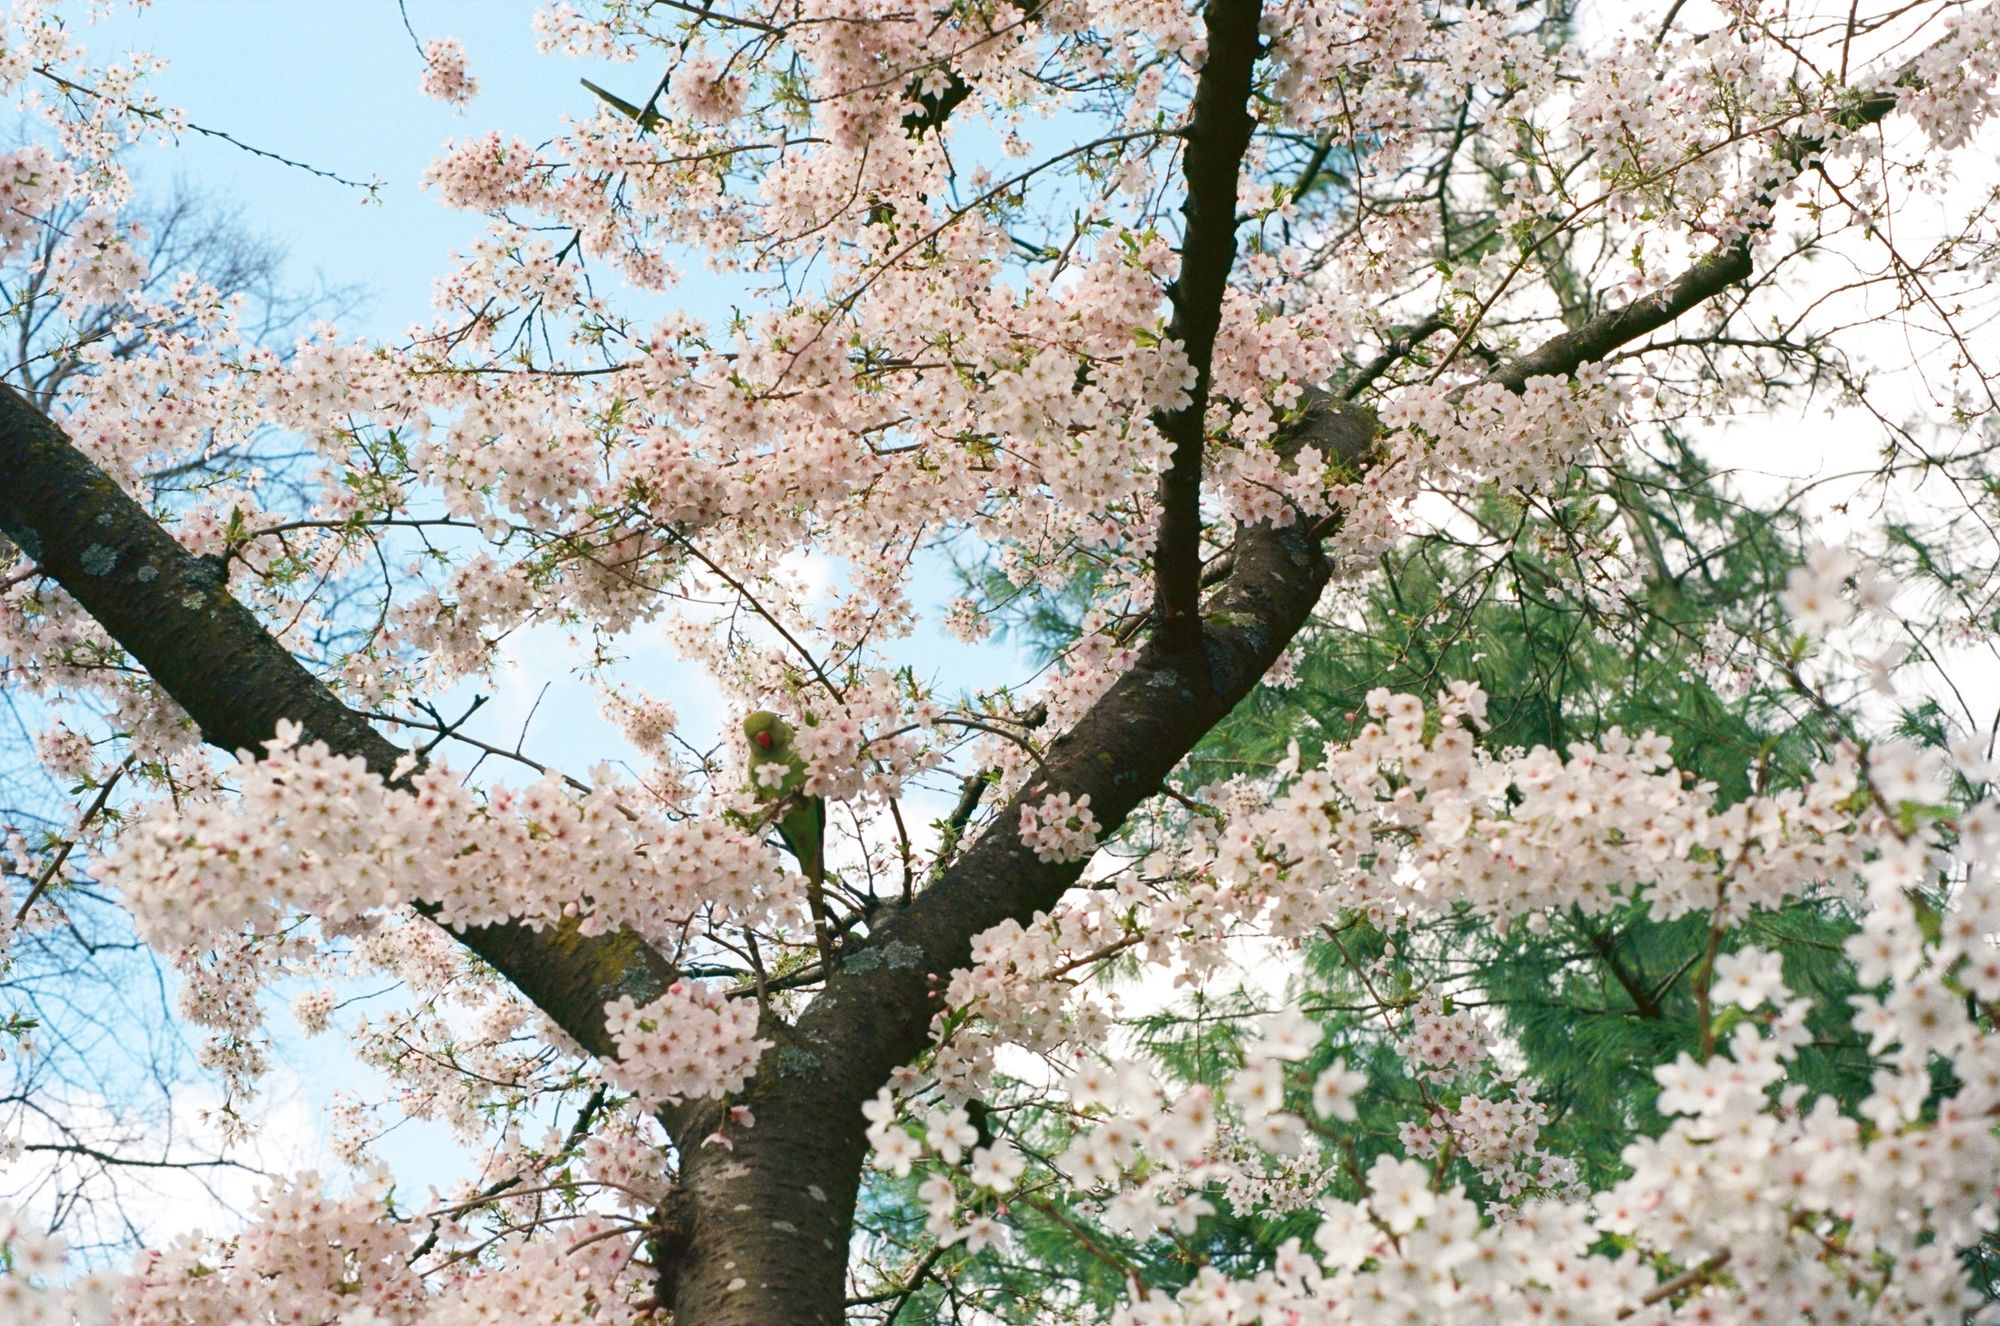 2023 spring blossom retrospective